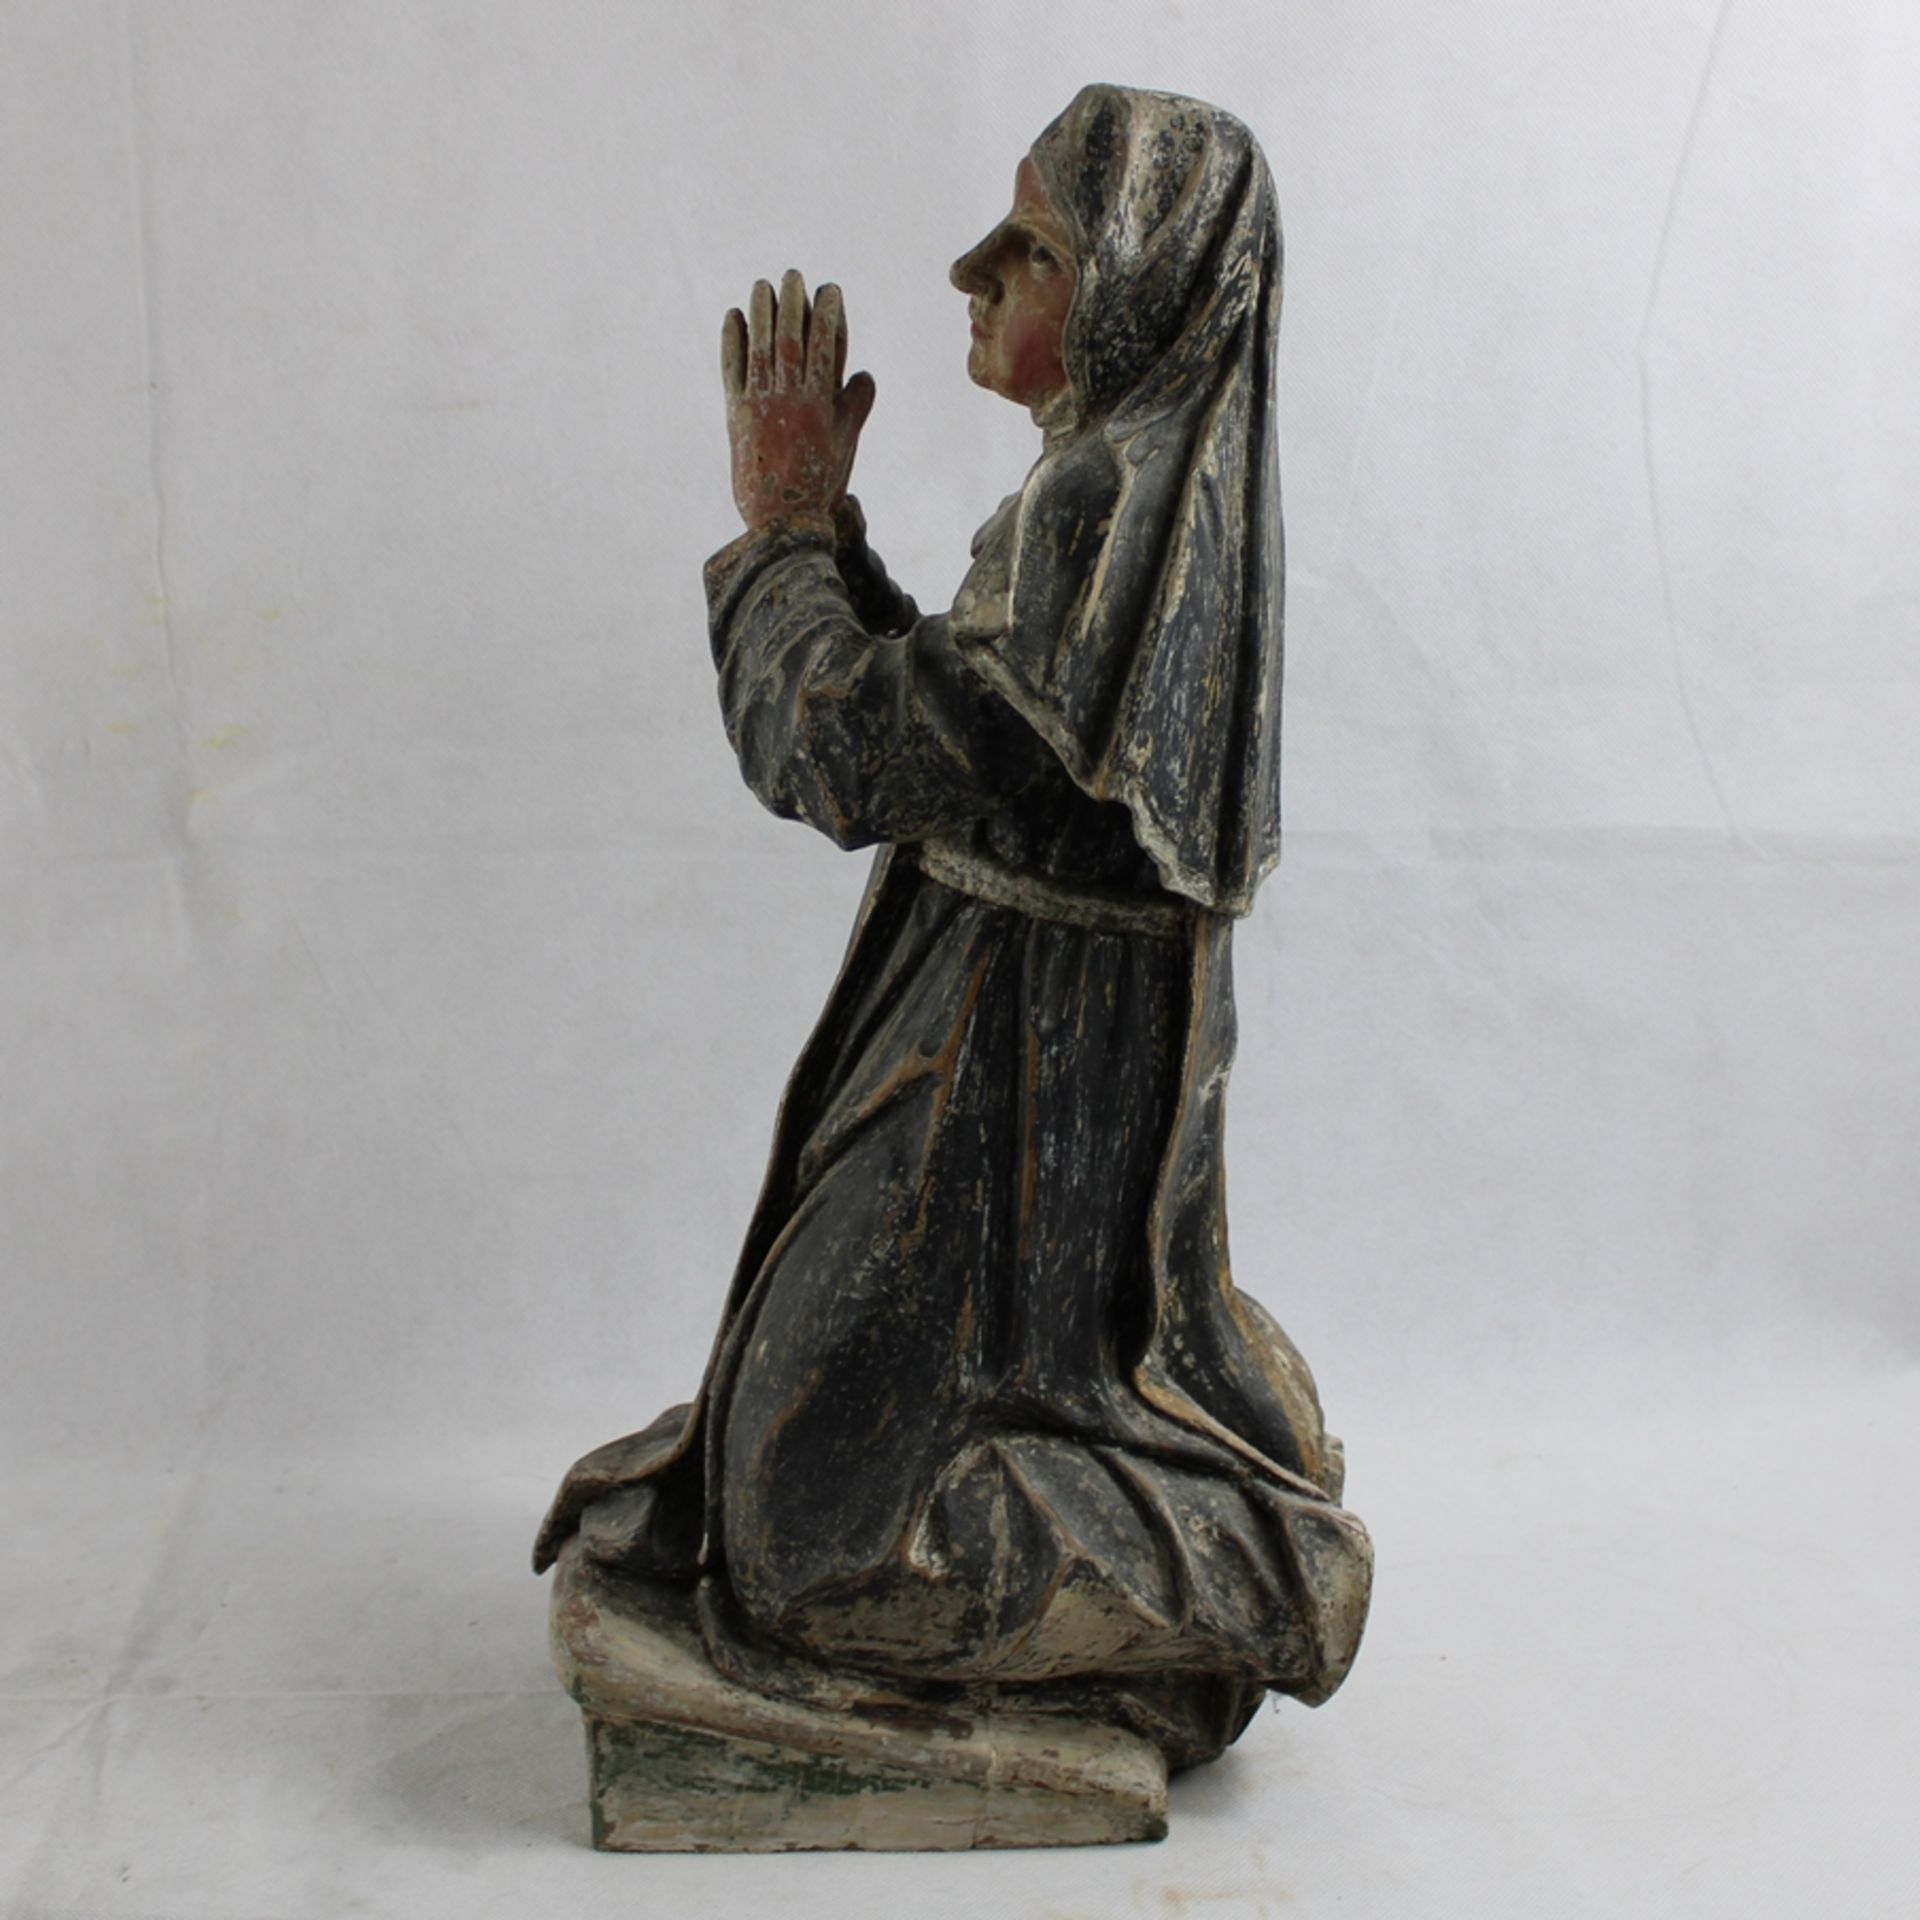 Bernadette Soubirous, Nonne knieend Holz geschnitzt u. bemalt ca. 45 cm, Altersspuren - Bild 2 aus 3